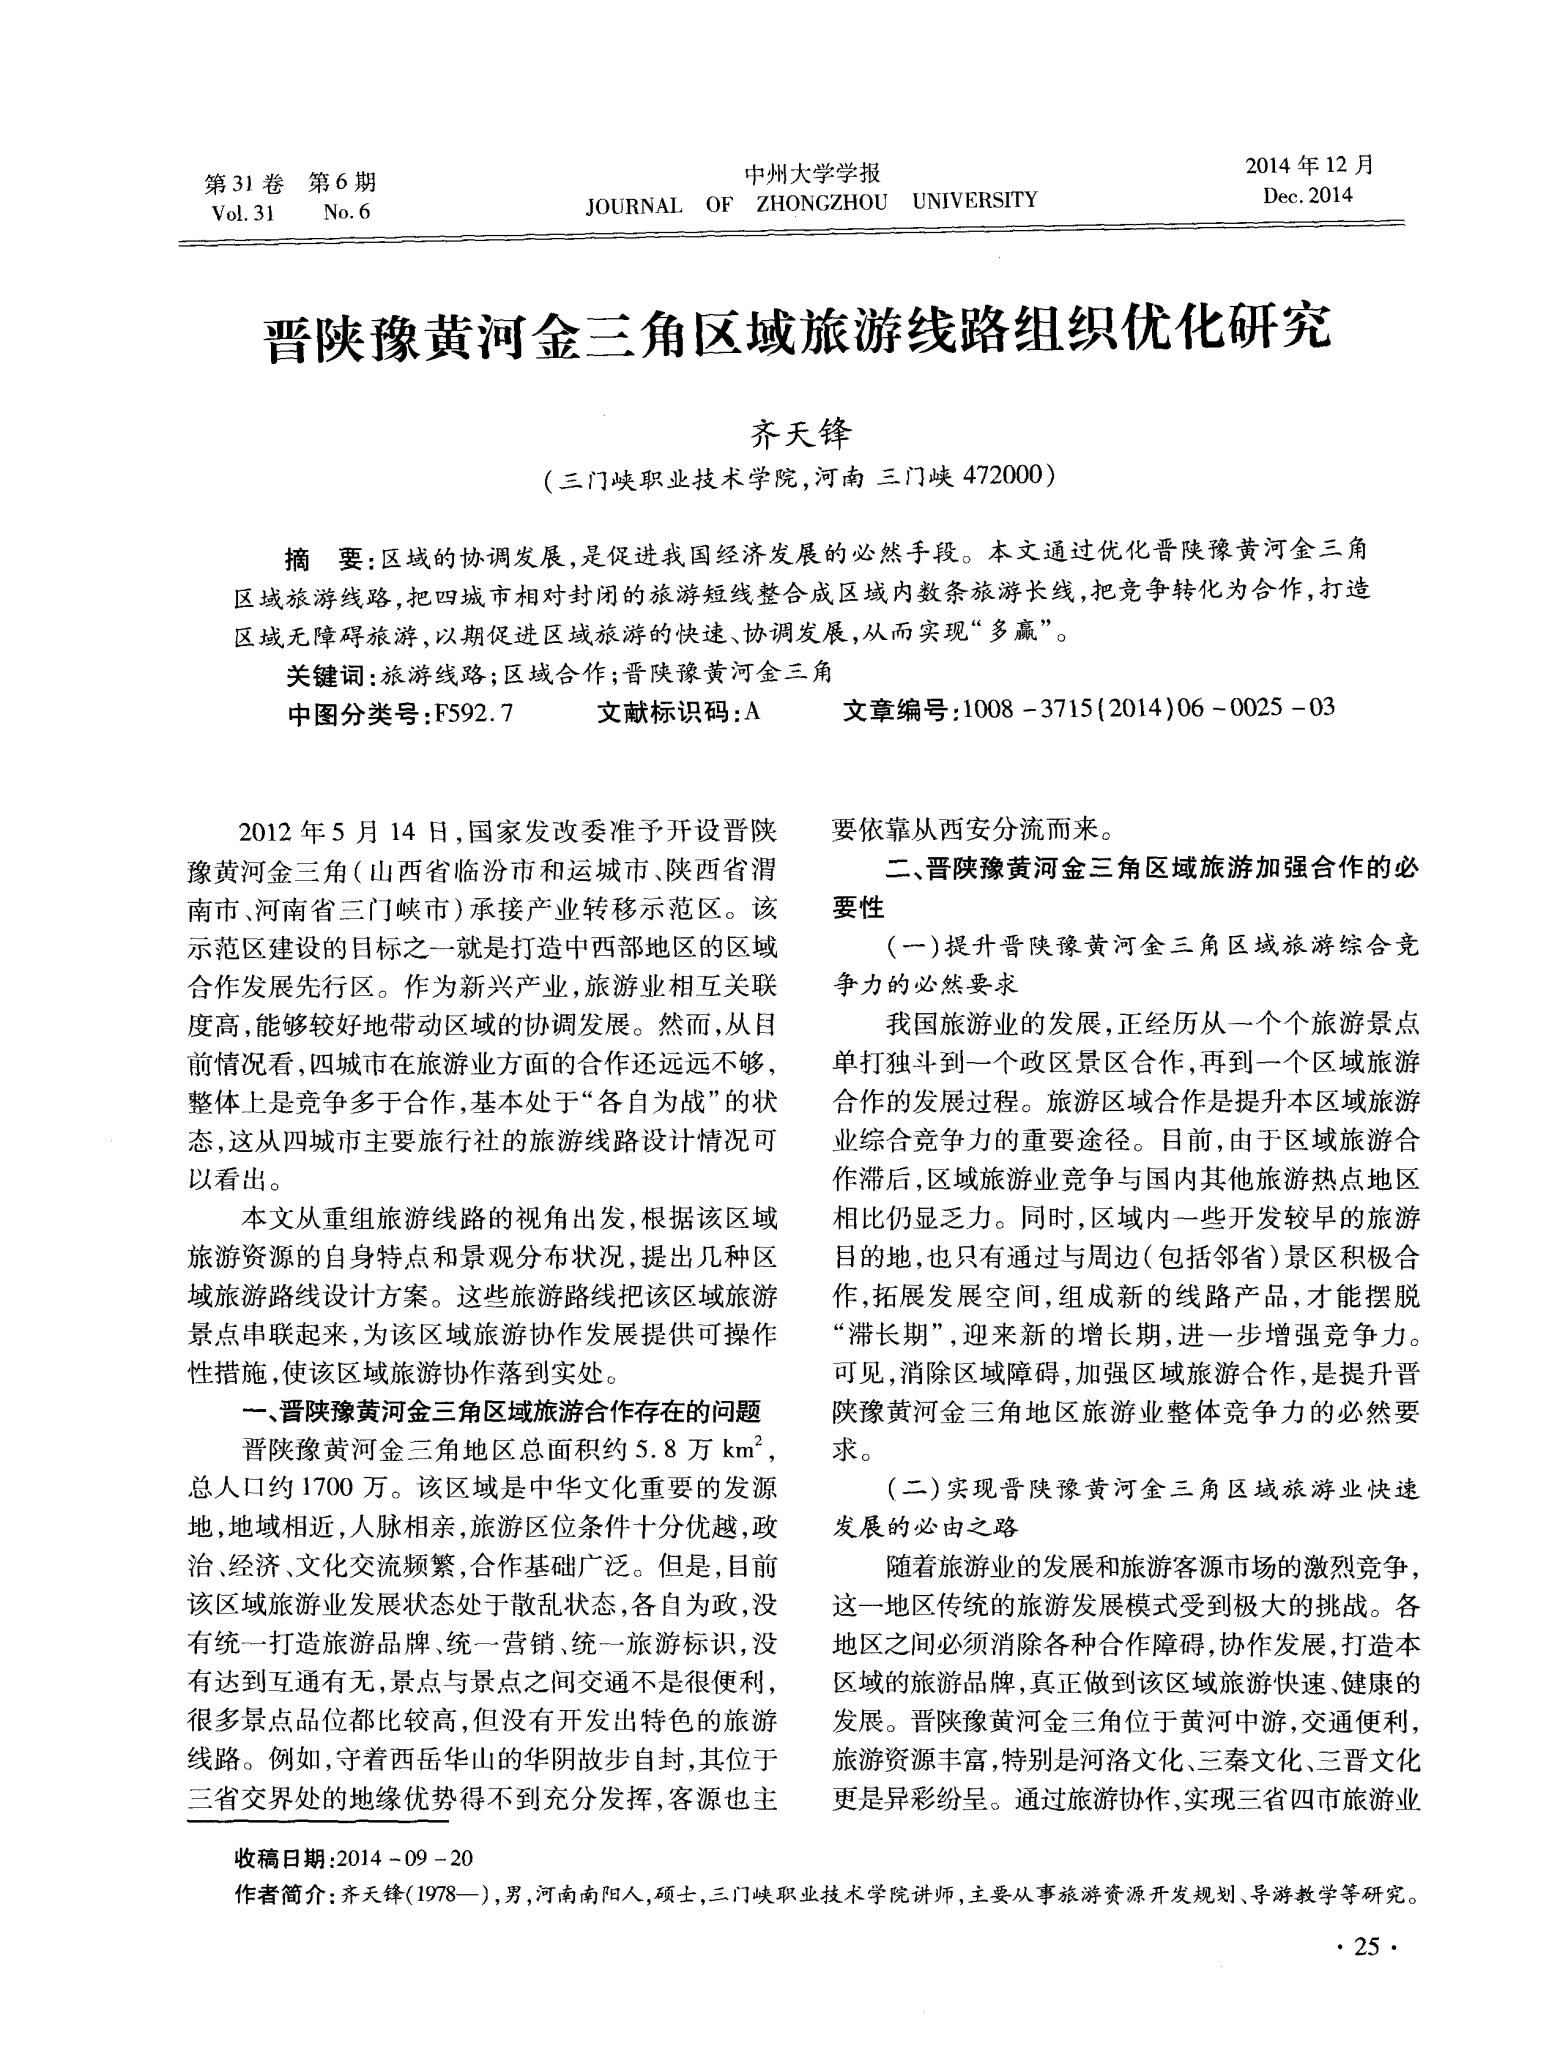 晋陕豫黄河金三角区域旅游线路组织优化研究